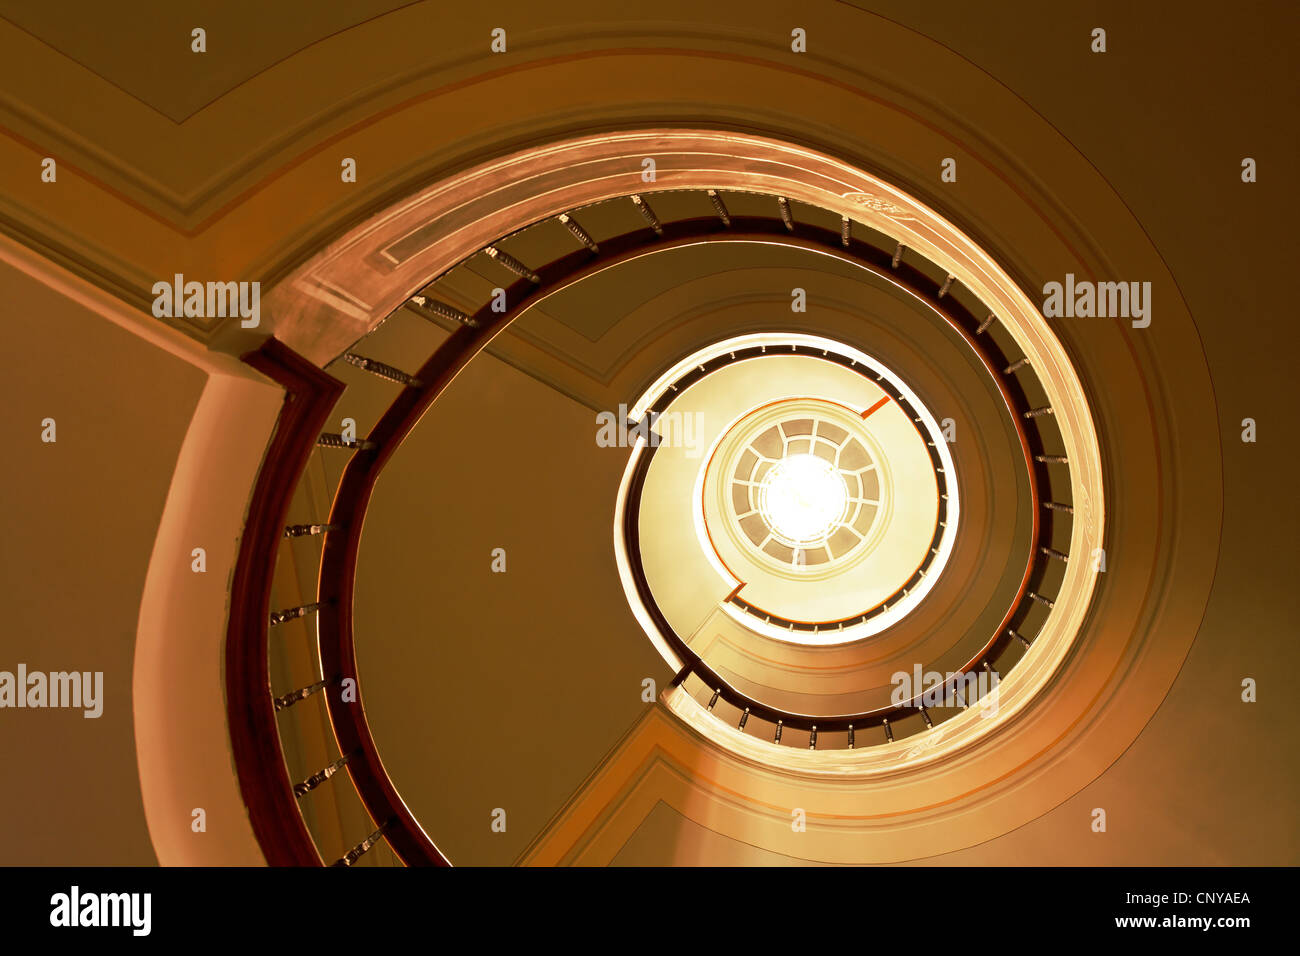 Architektur-Kurven der Wendeltreppe, Treppenhaus und scharf Dekoration im antiken Stil mit Kronleuchter Beleuchtung im Hintergrund Stockfoto